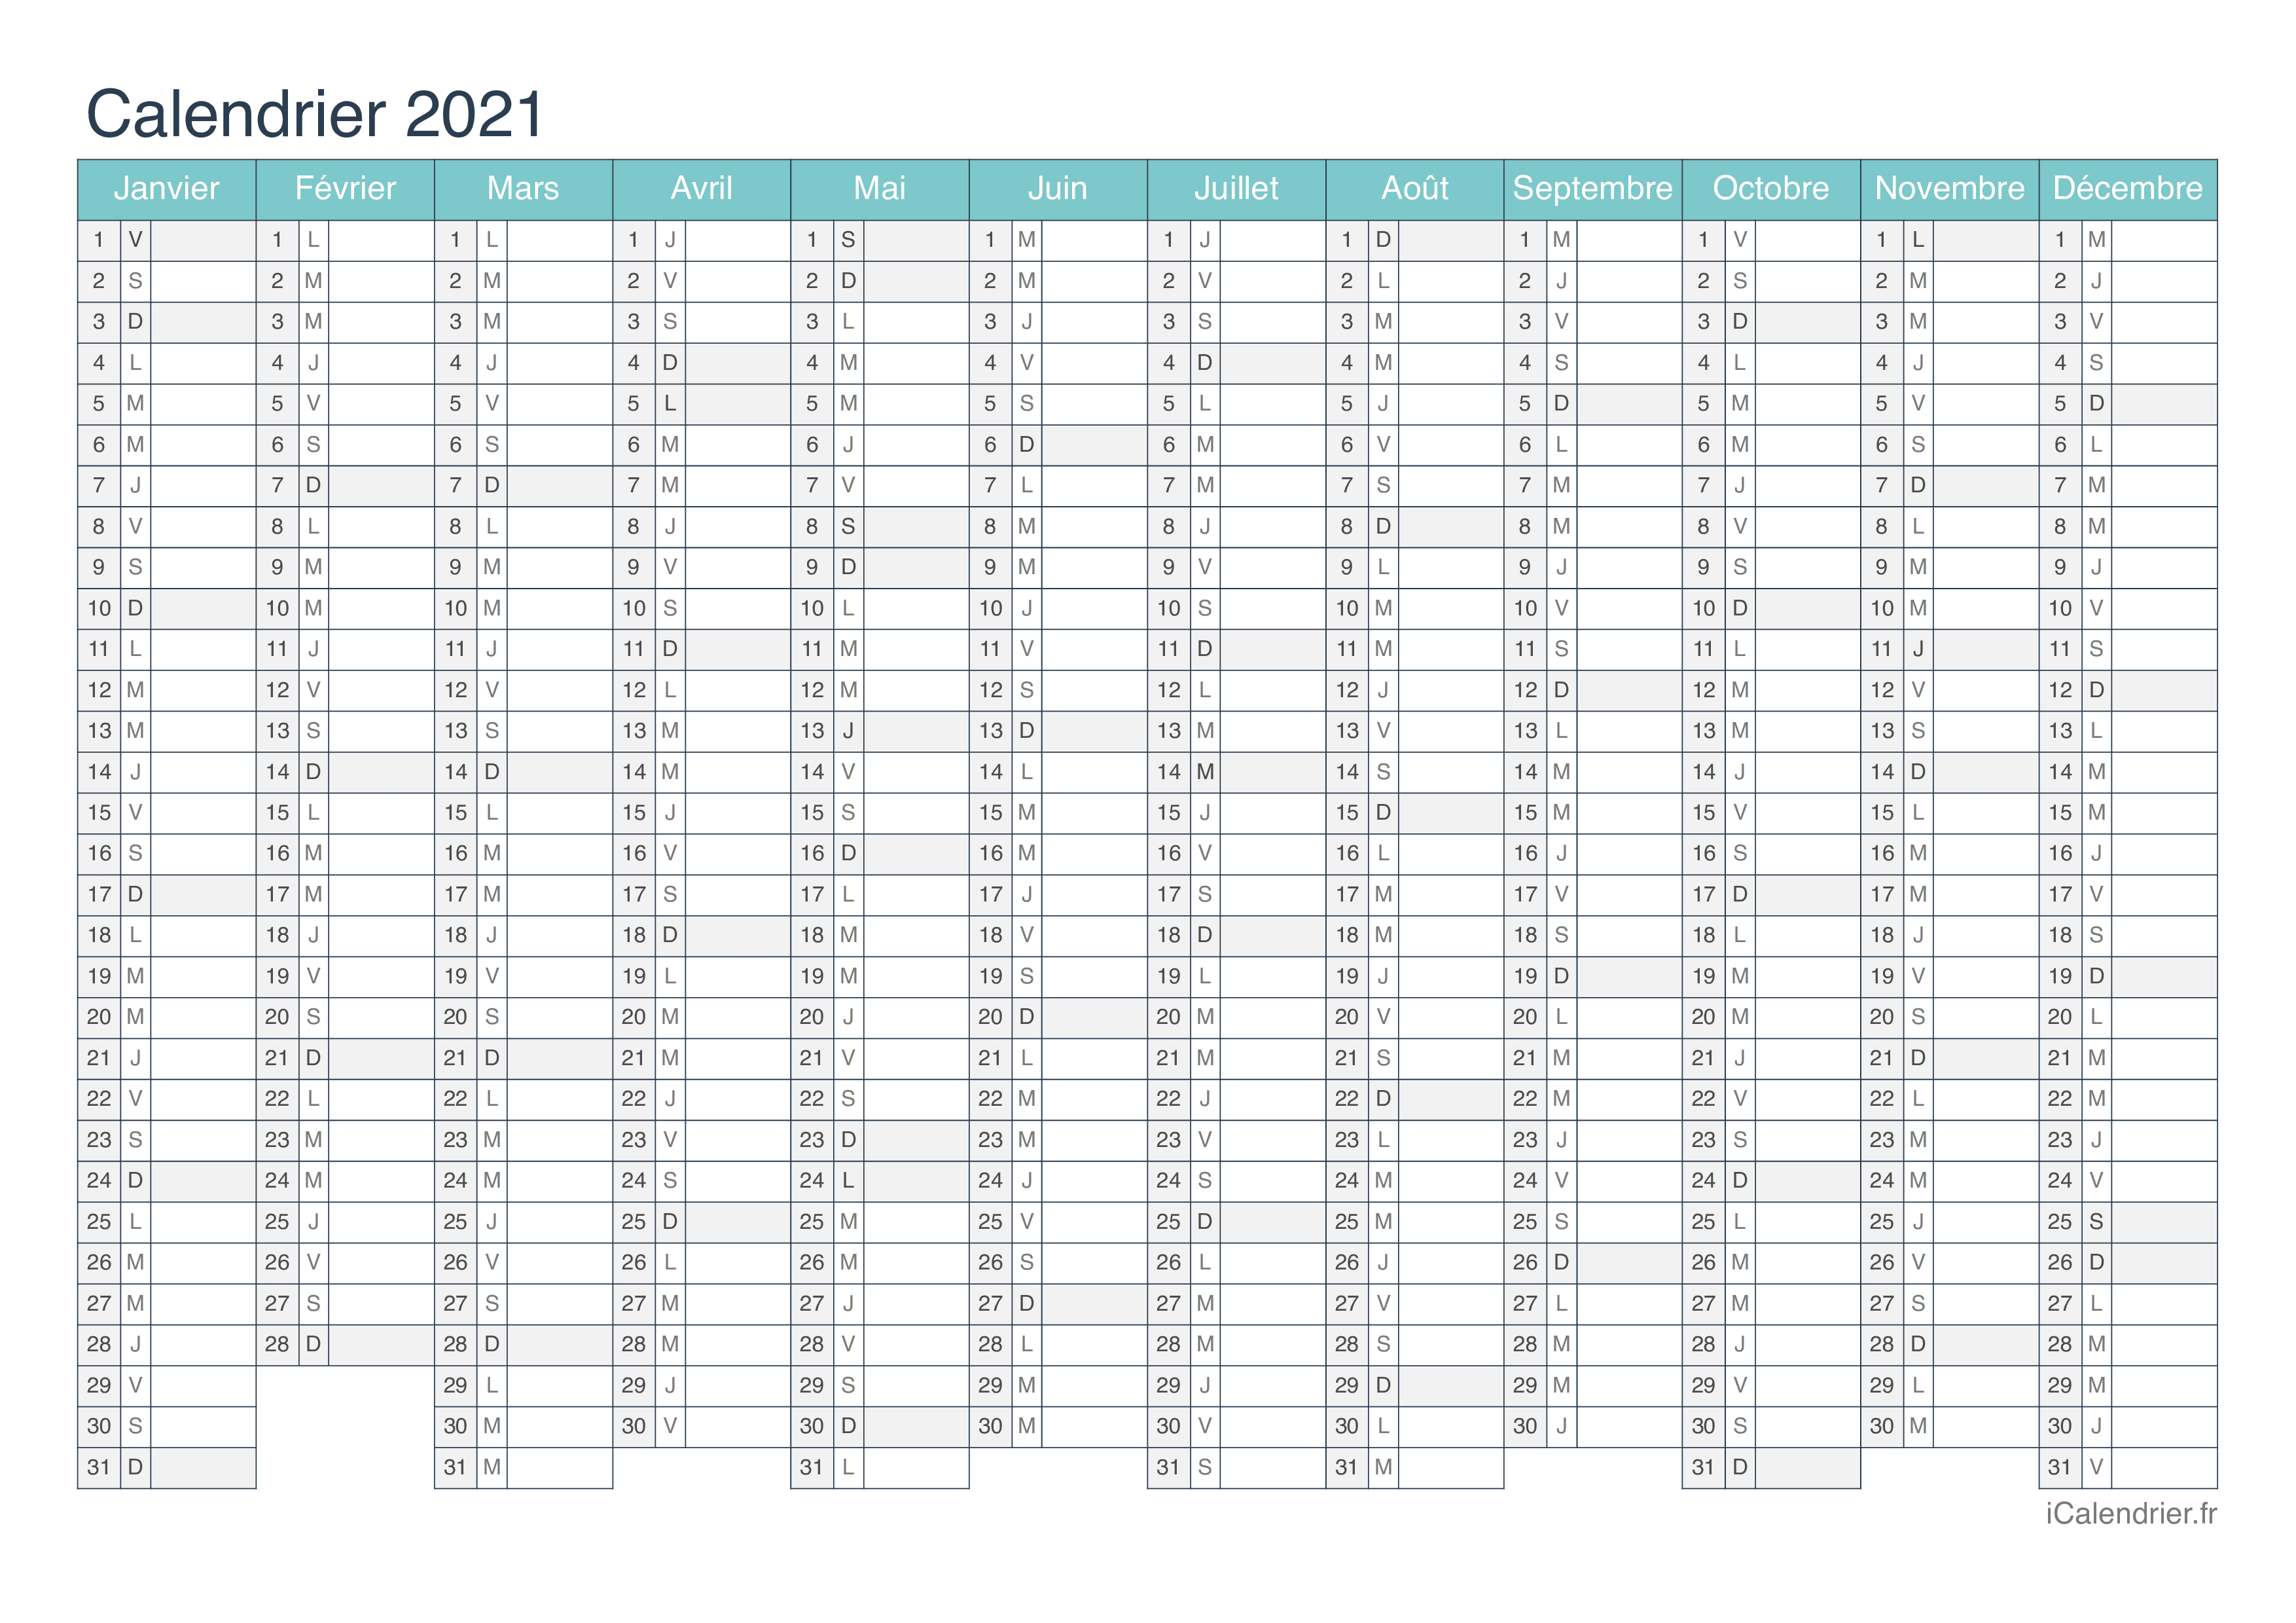 Calendrier 2021 Gratuit Excel Calendrier 2021 à imprimer PDF et Excel   iCalendrier